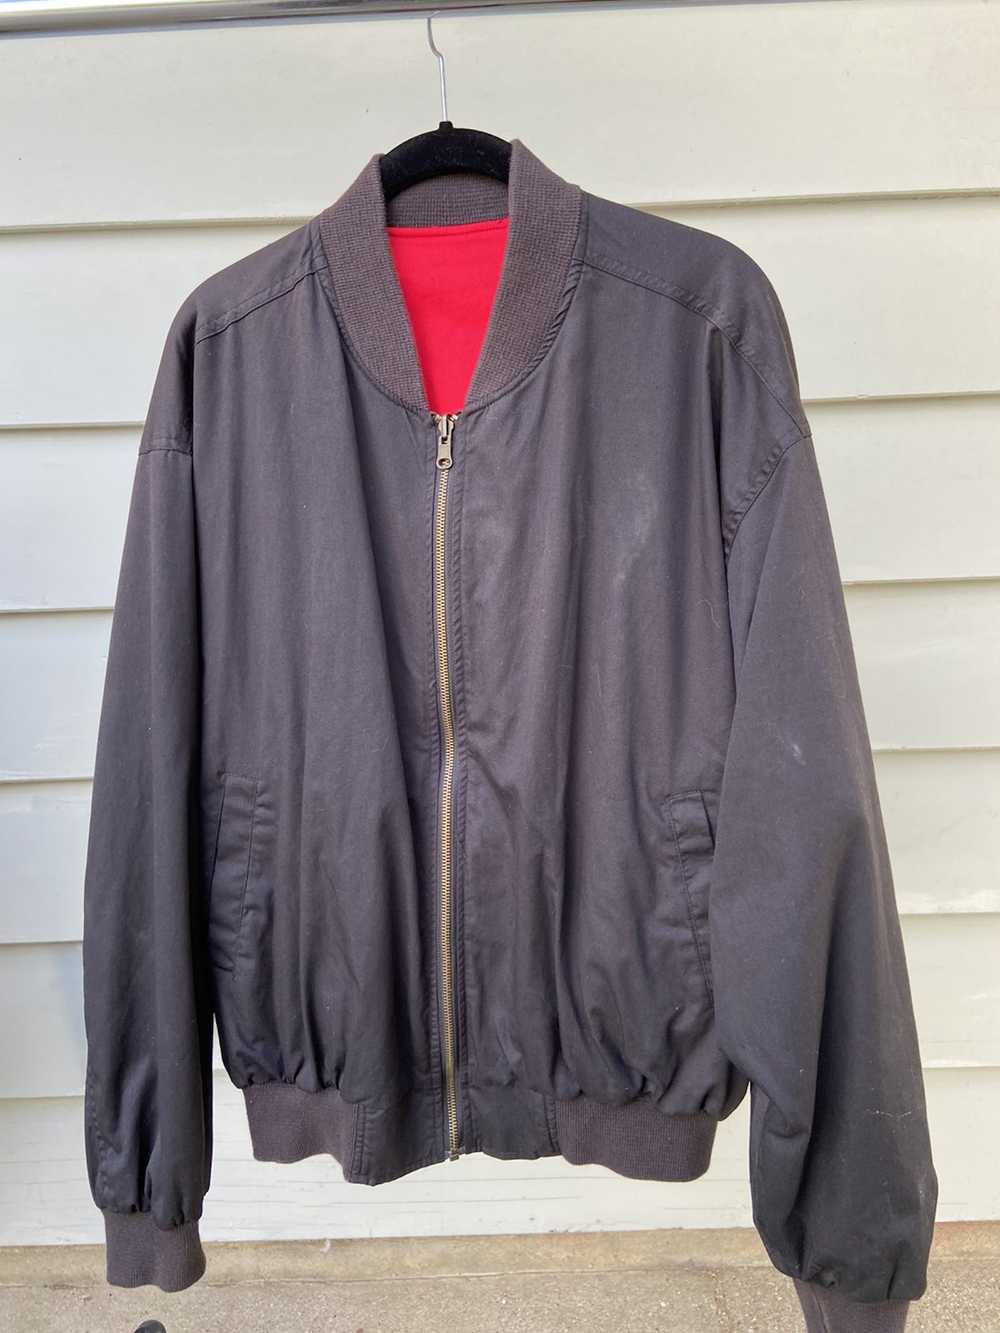 Marlboro Vintage Marlboro jacket - image 2